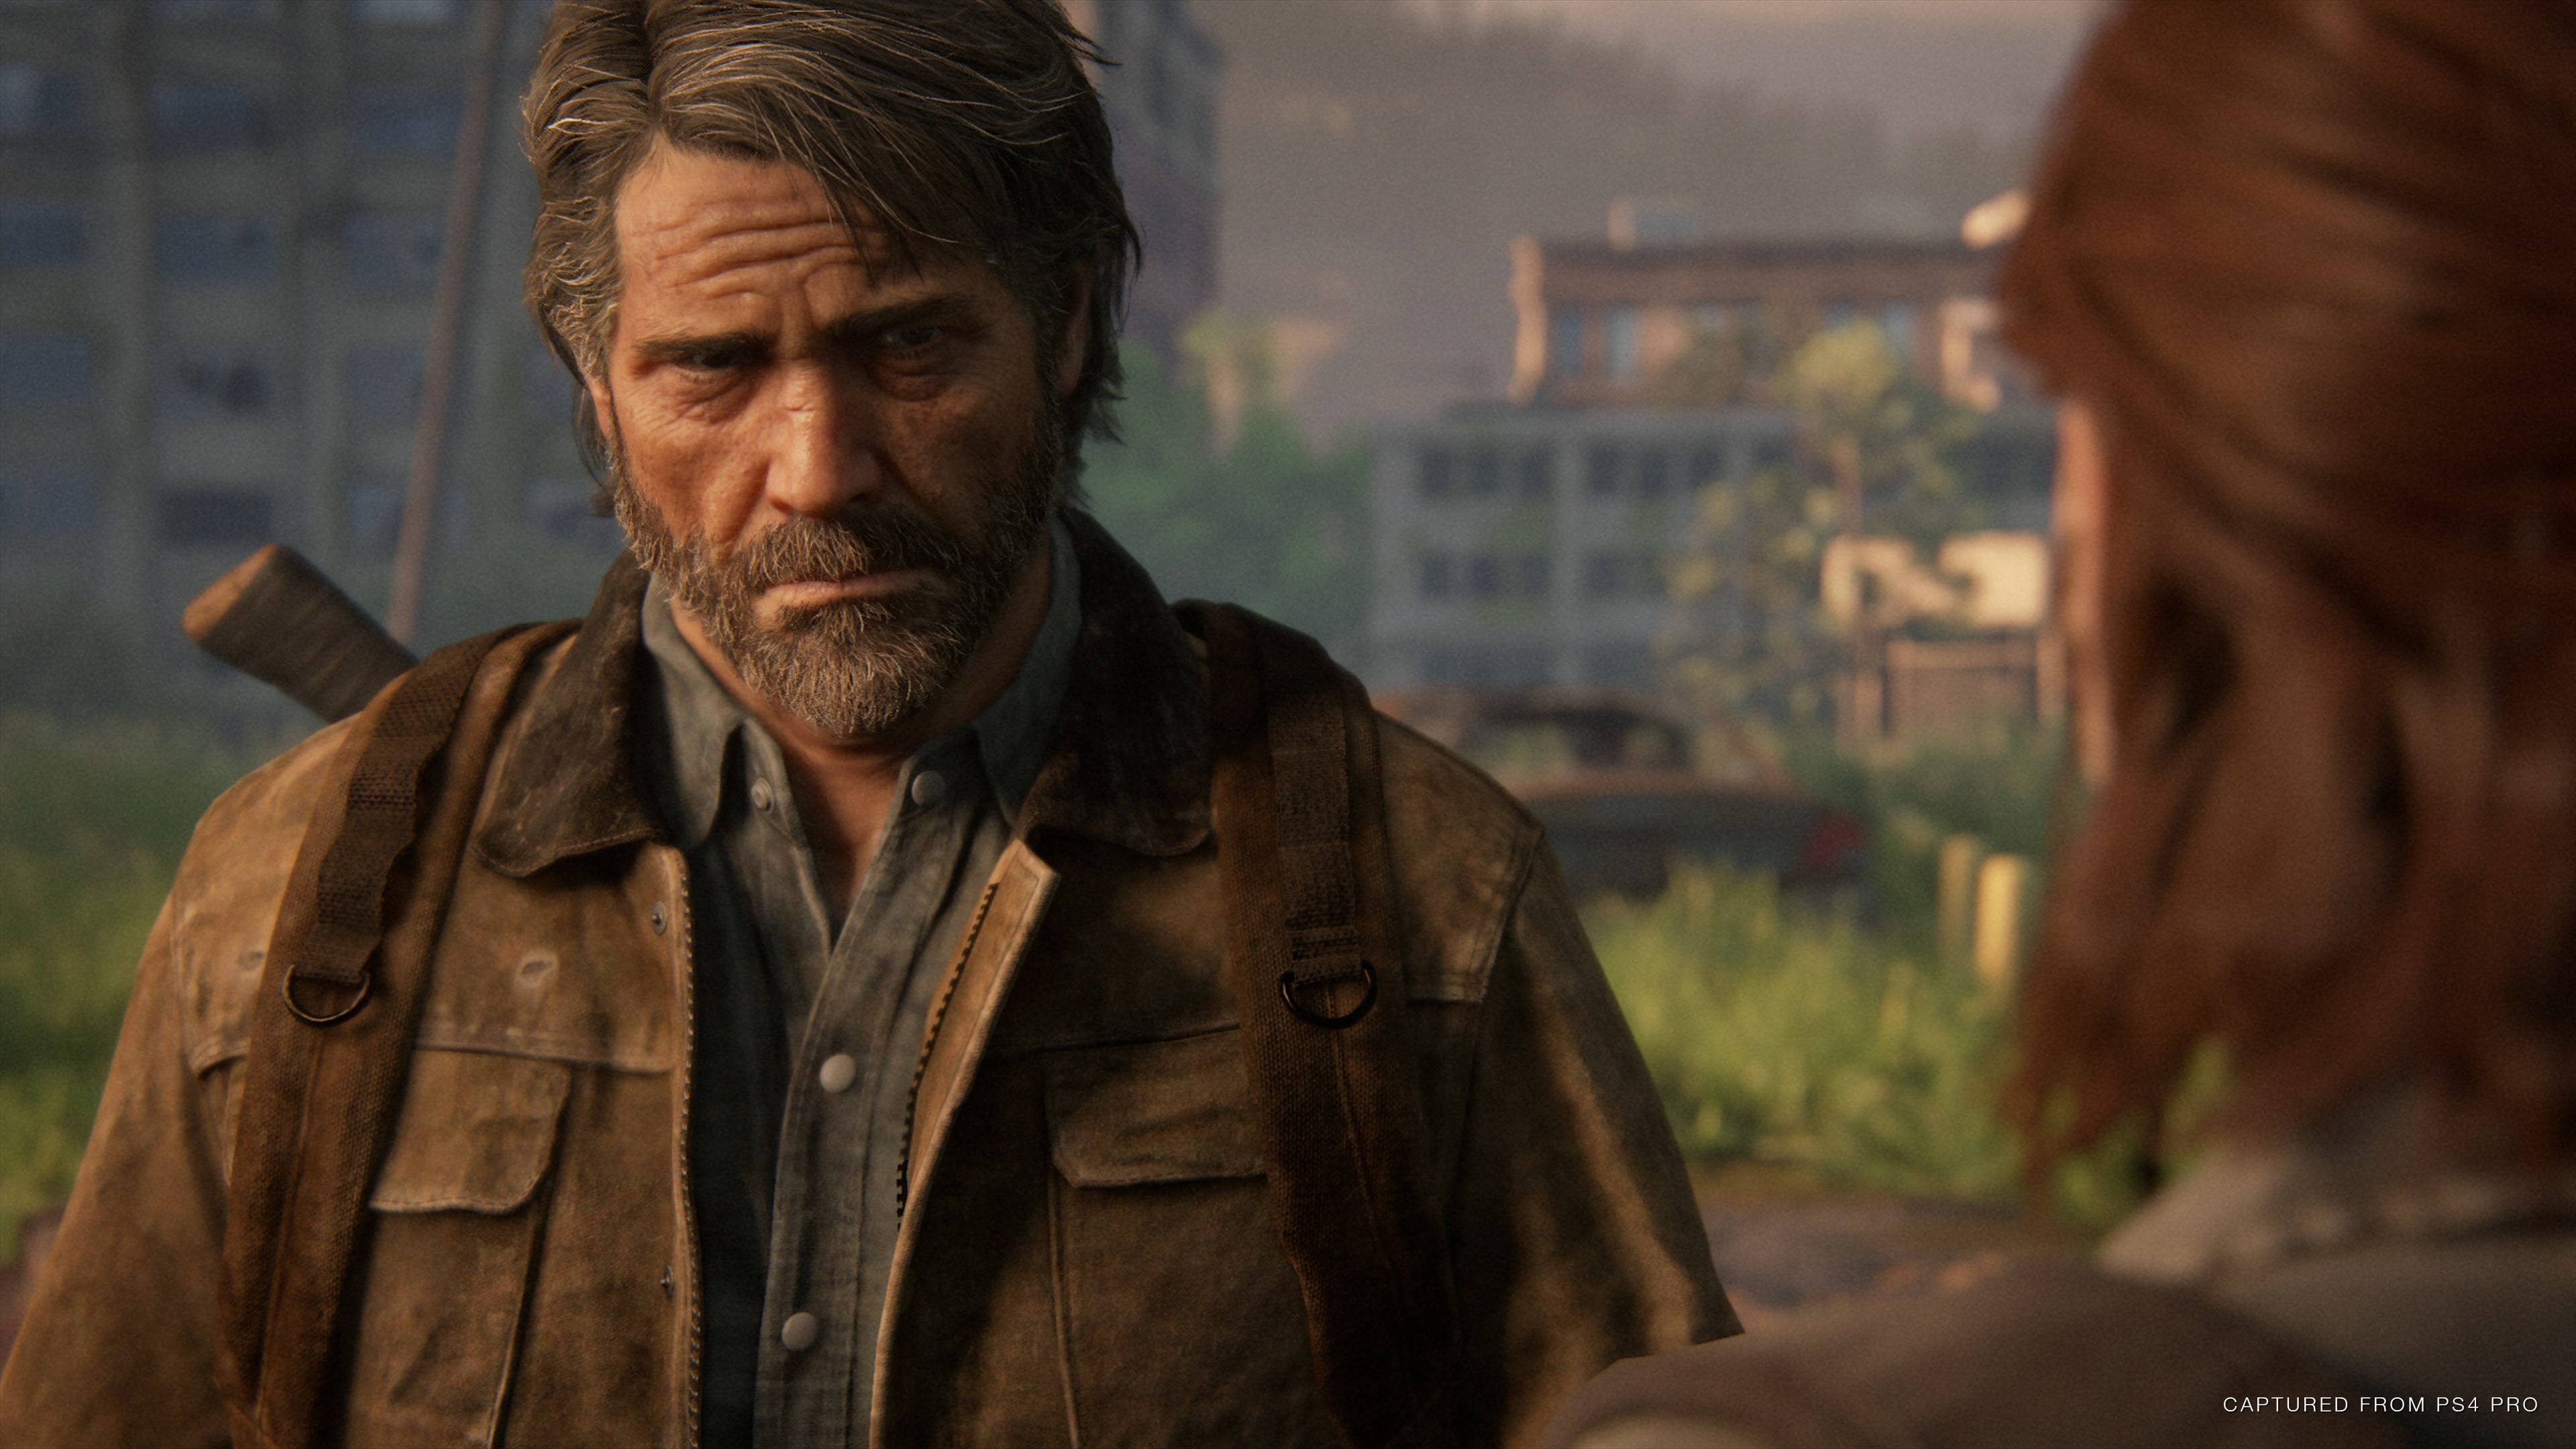 The Last of Us Part 2 para PS4 Mídia Digital (Compatível com PS5)